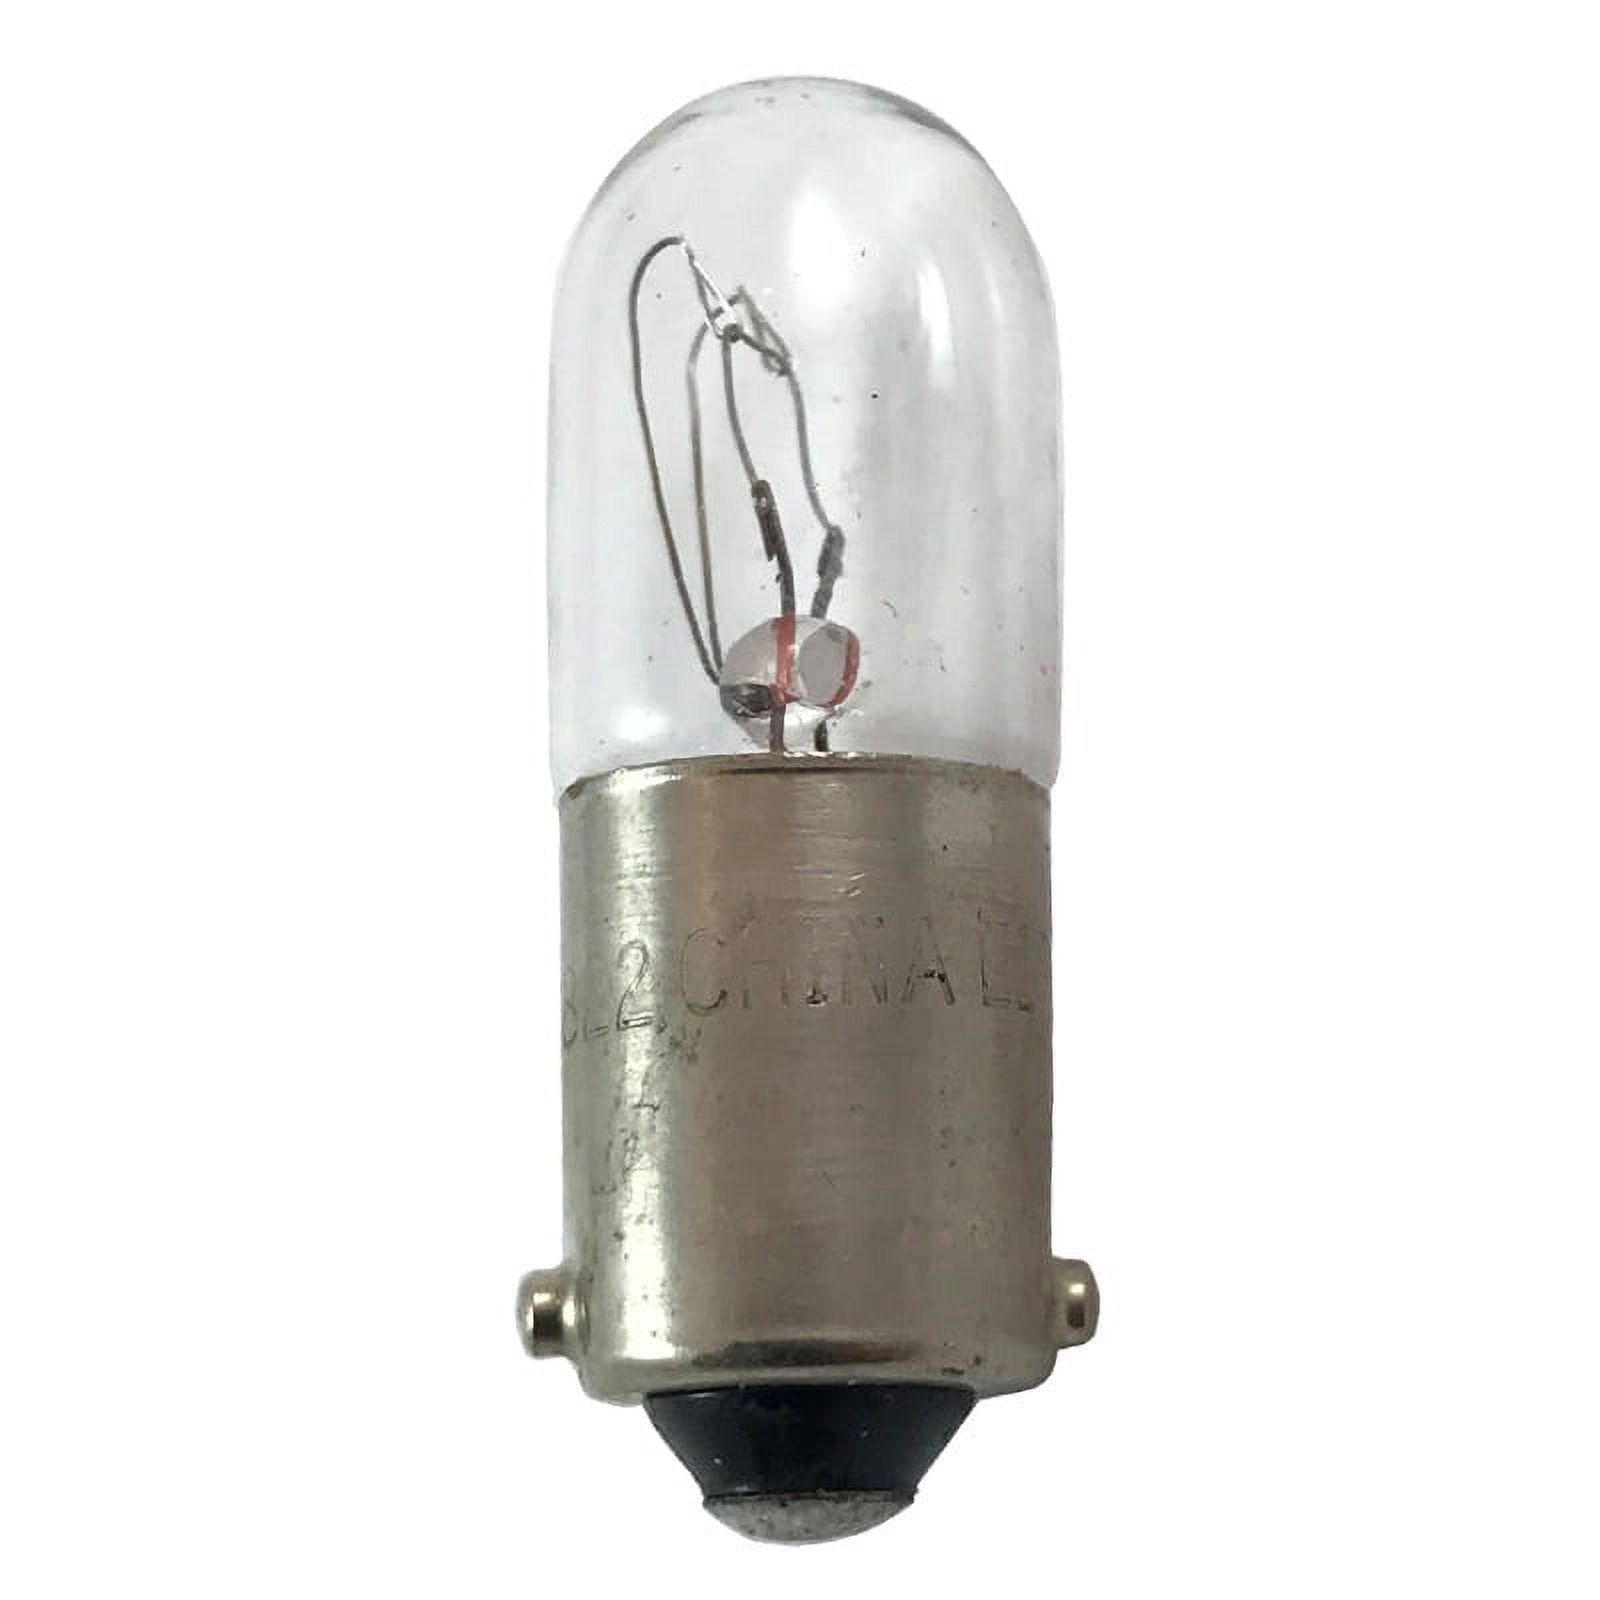 GE 27749 1822 - 4w 36v T3.25 (T3 1/4) Ba9s Low Voltage Miniature Automotive Bulb - image 1 of 5